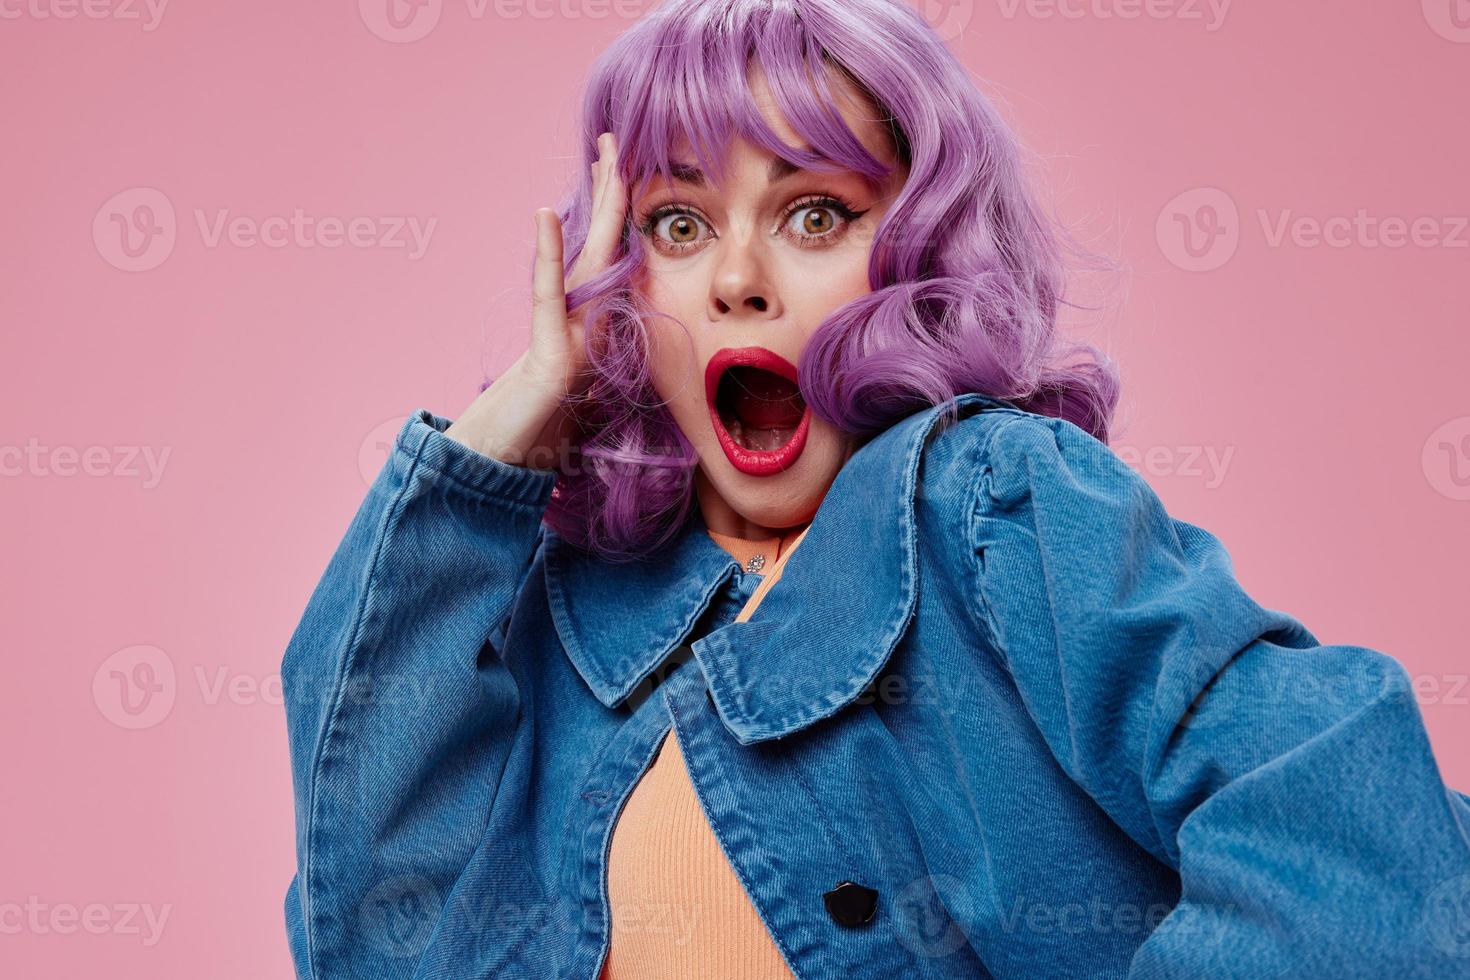 bonita jovem fêmea ondulado roxa cabelo azul Jaqueta emoções Diversão Rosa fundo inalterado foto